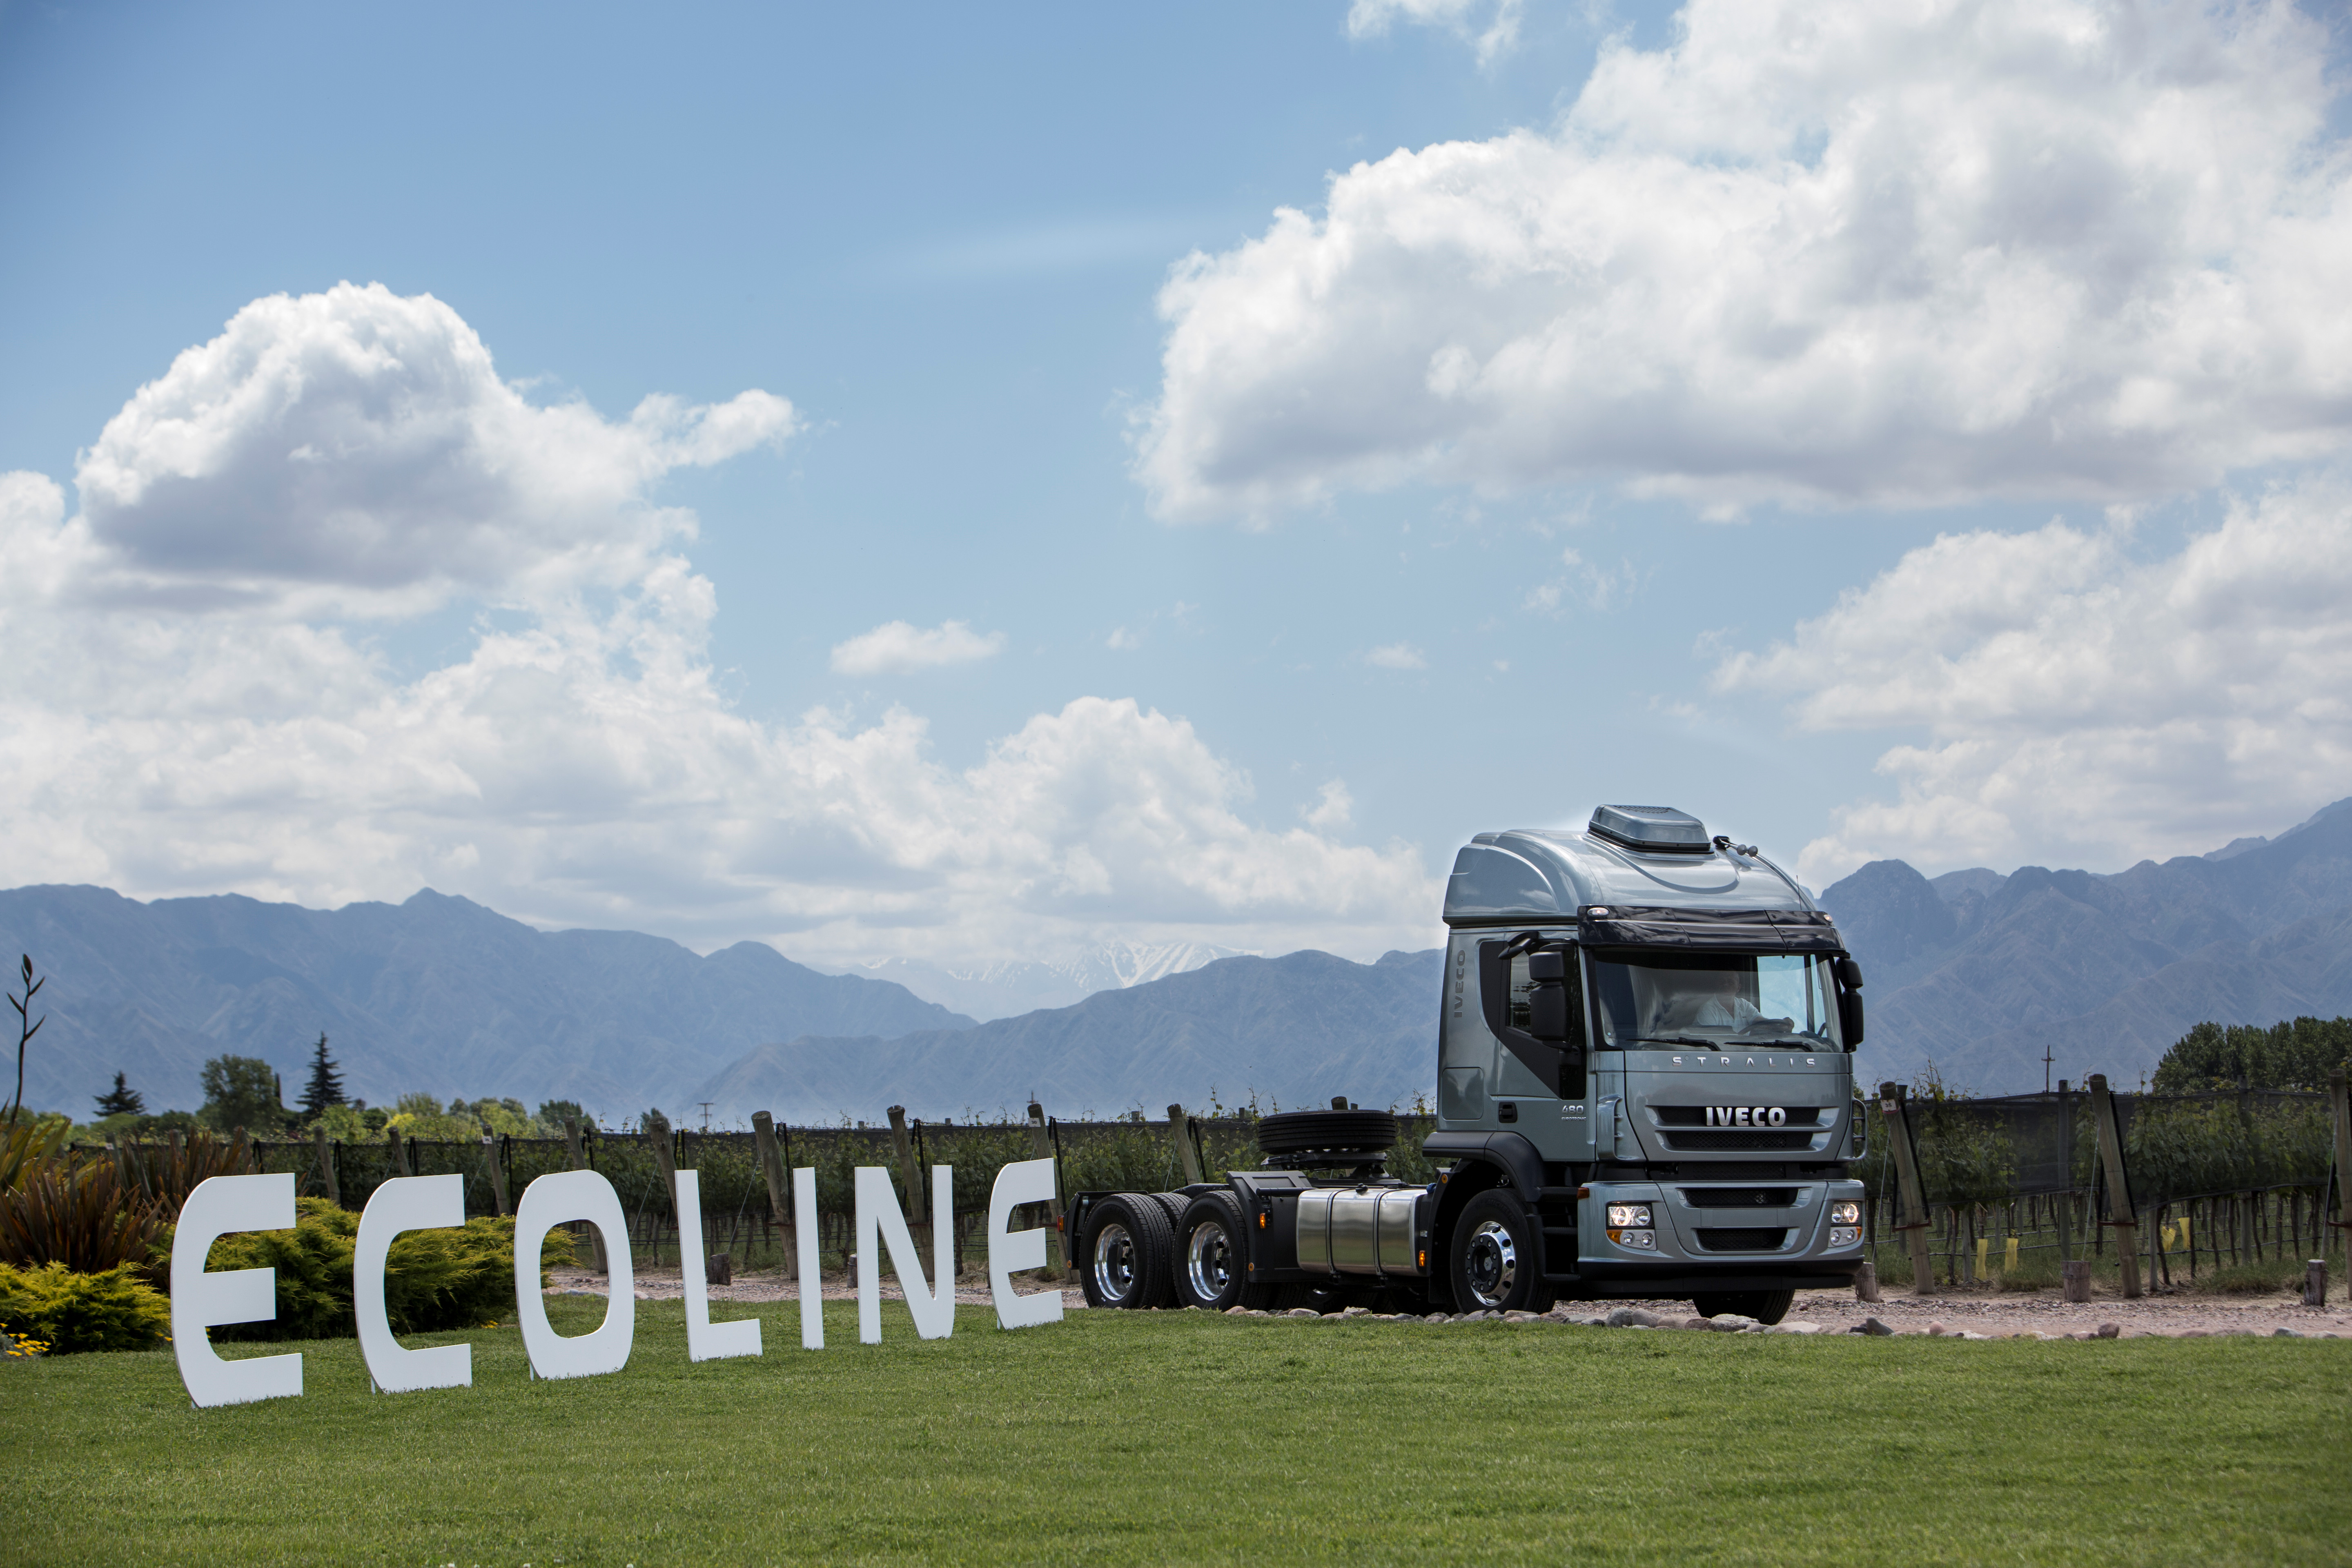 Iveco recorre el país presentando sus camiones Ecoline